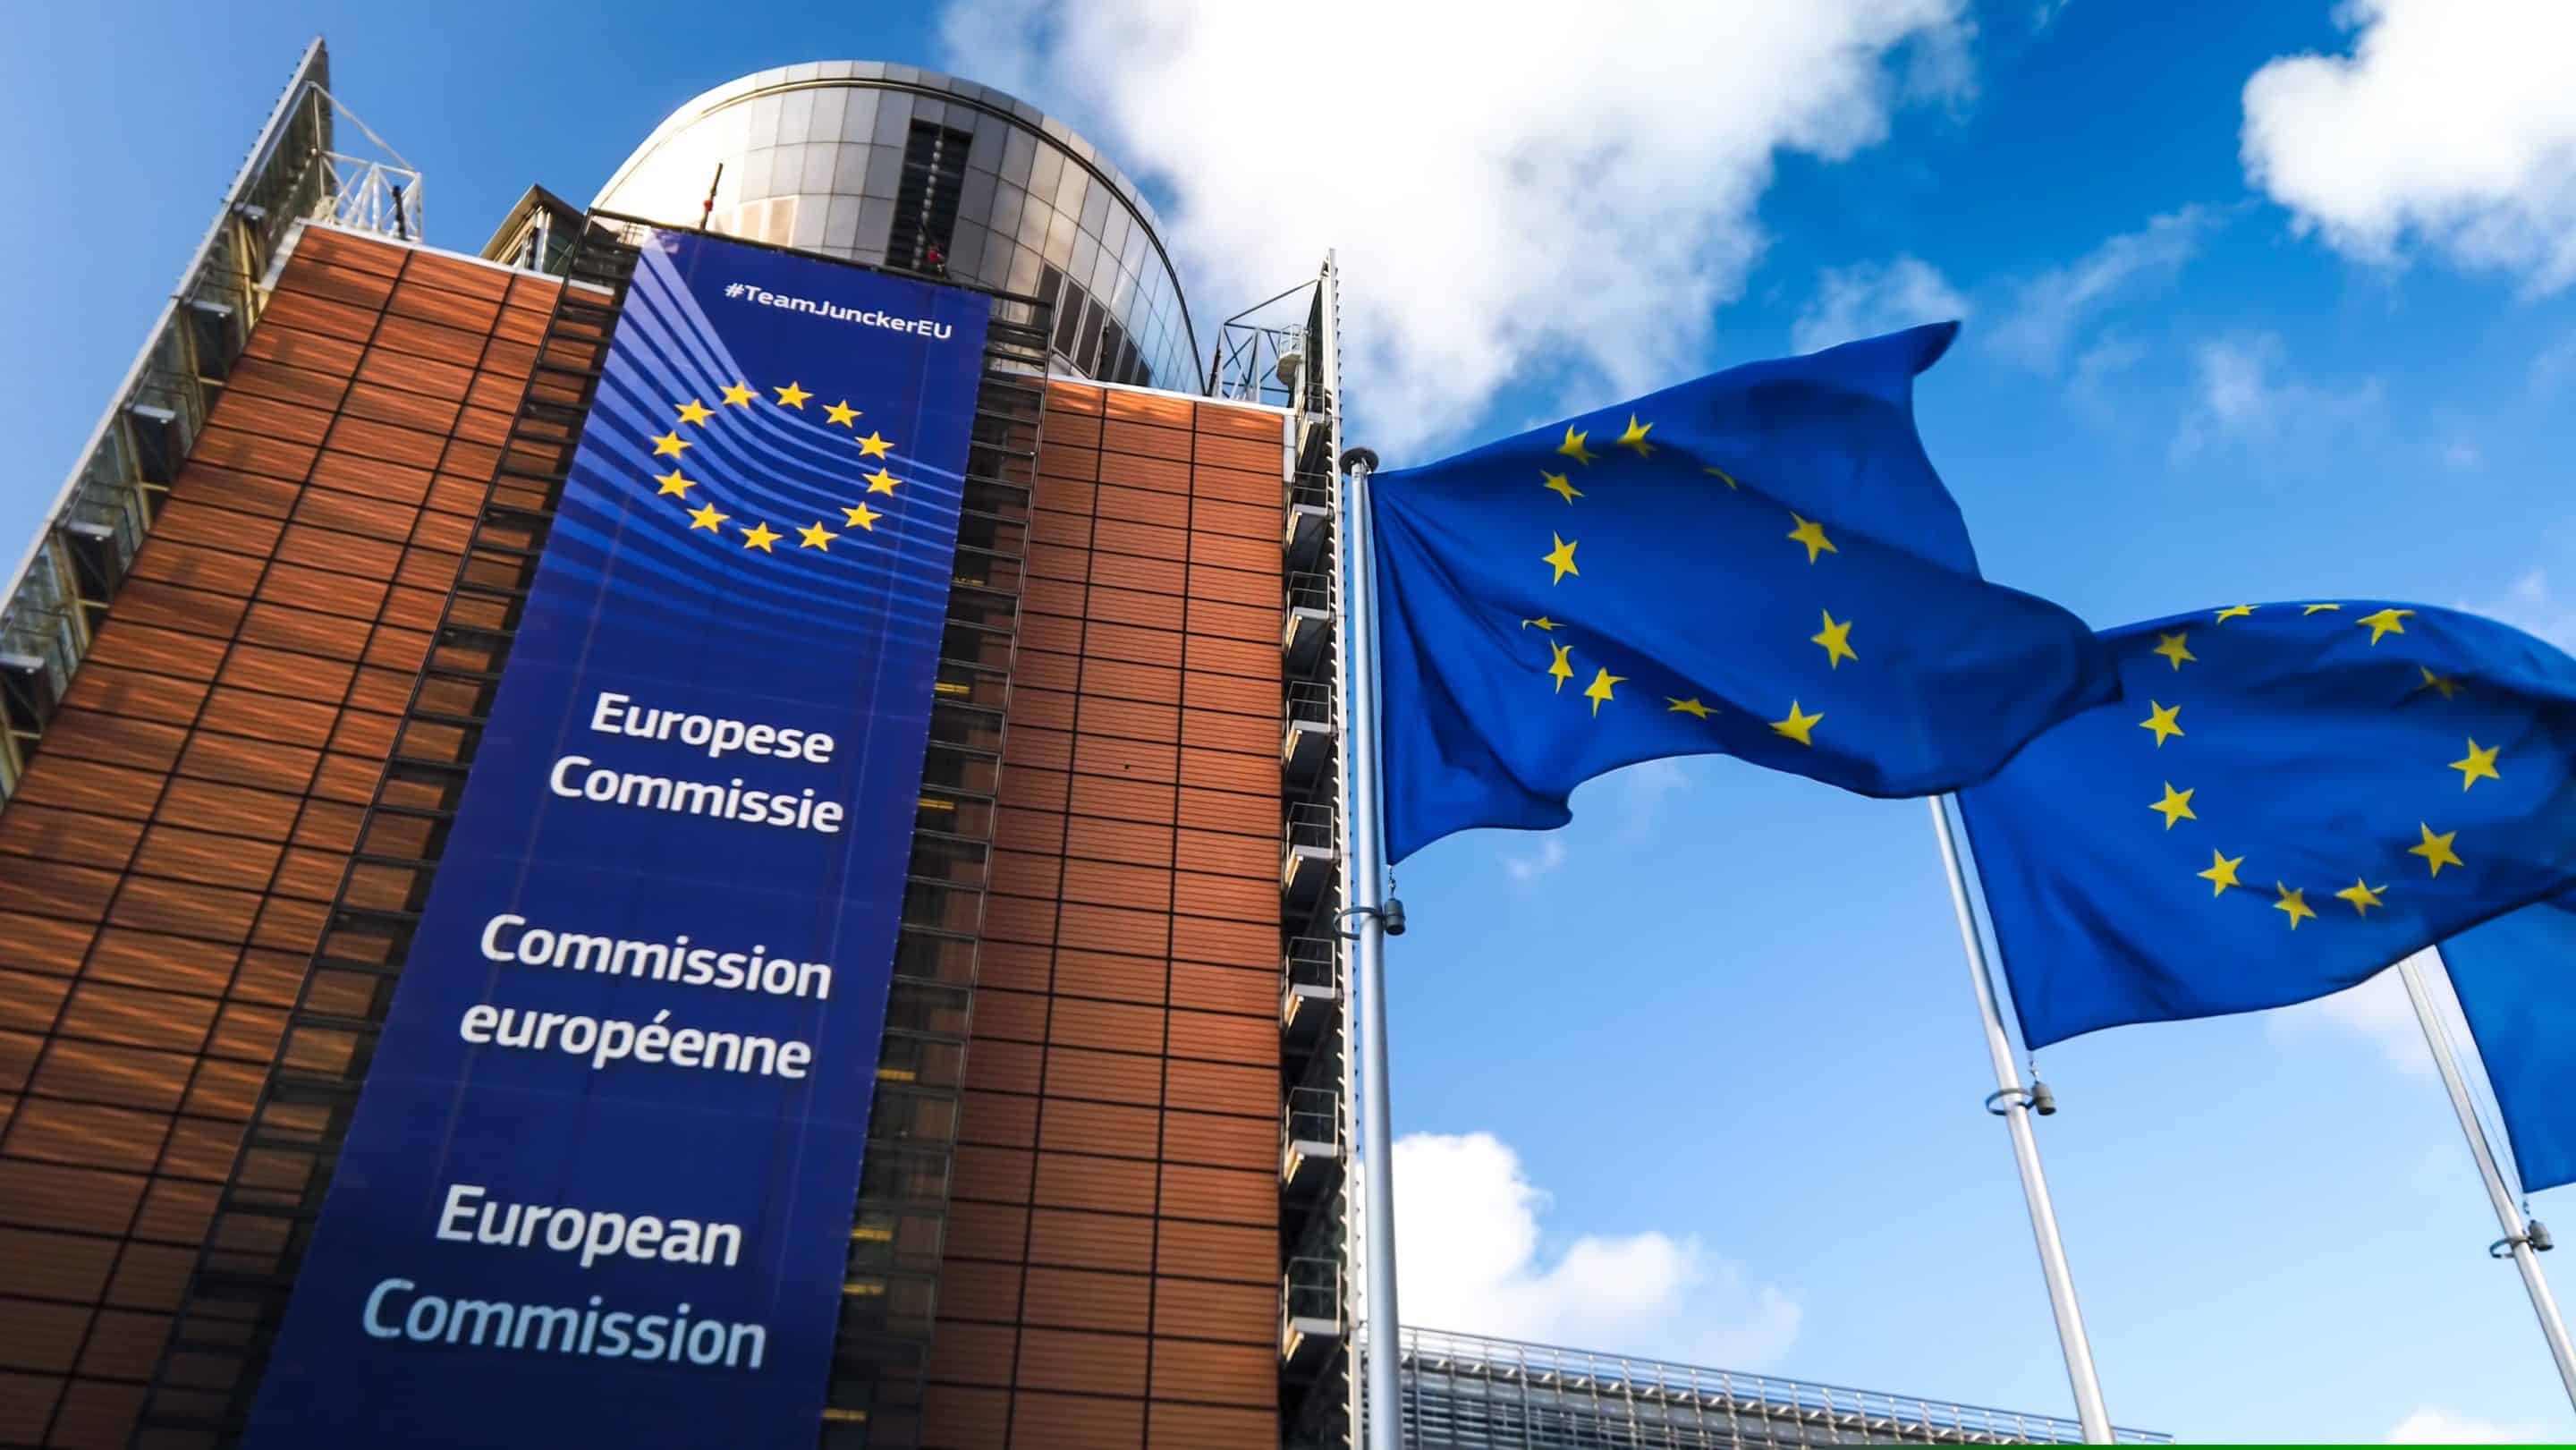 Ευρωπαϊκή Επιτροπή: κριτικές παρατηρήσεις για την κατάσταση του Κράτους Δικαίου στην Ελλάδα